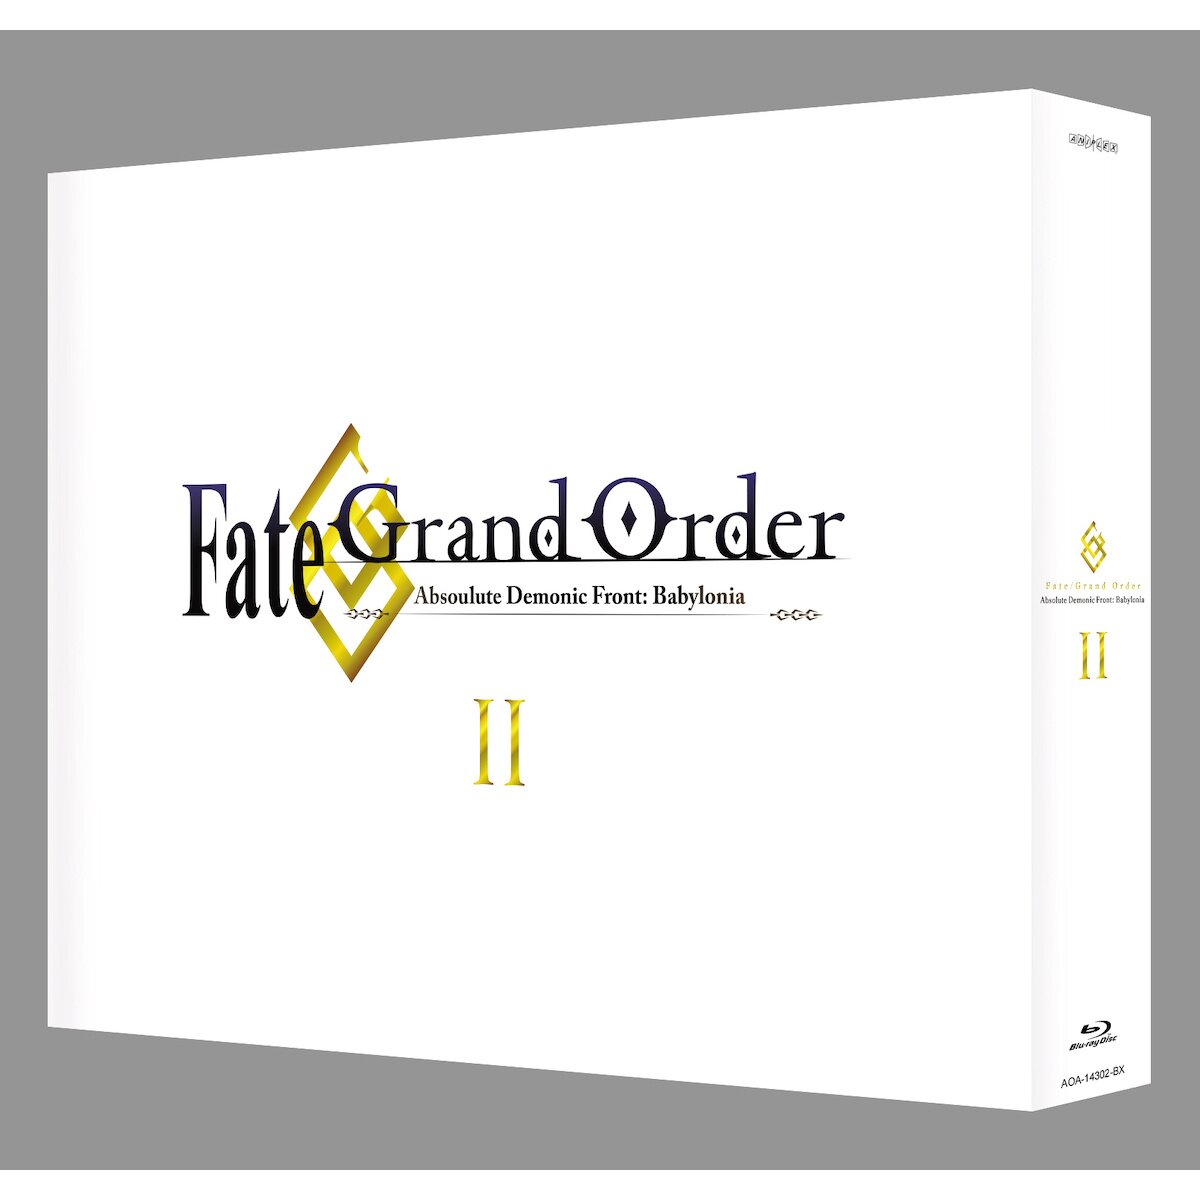 Fate/Grand Order: Babylonia – Episódio 21: Até breve